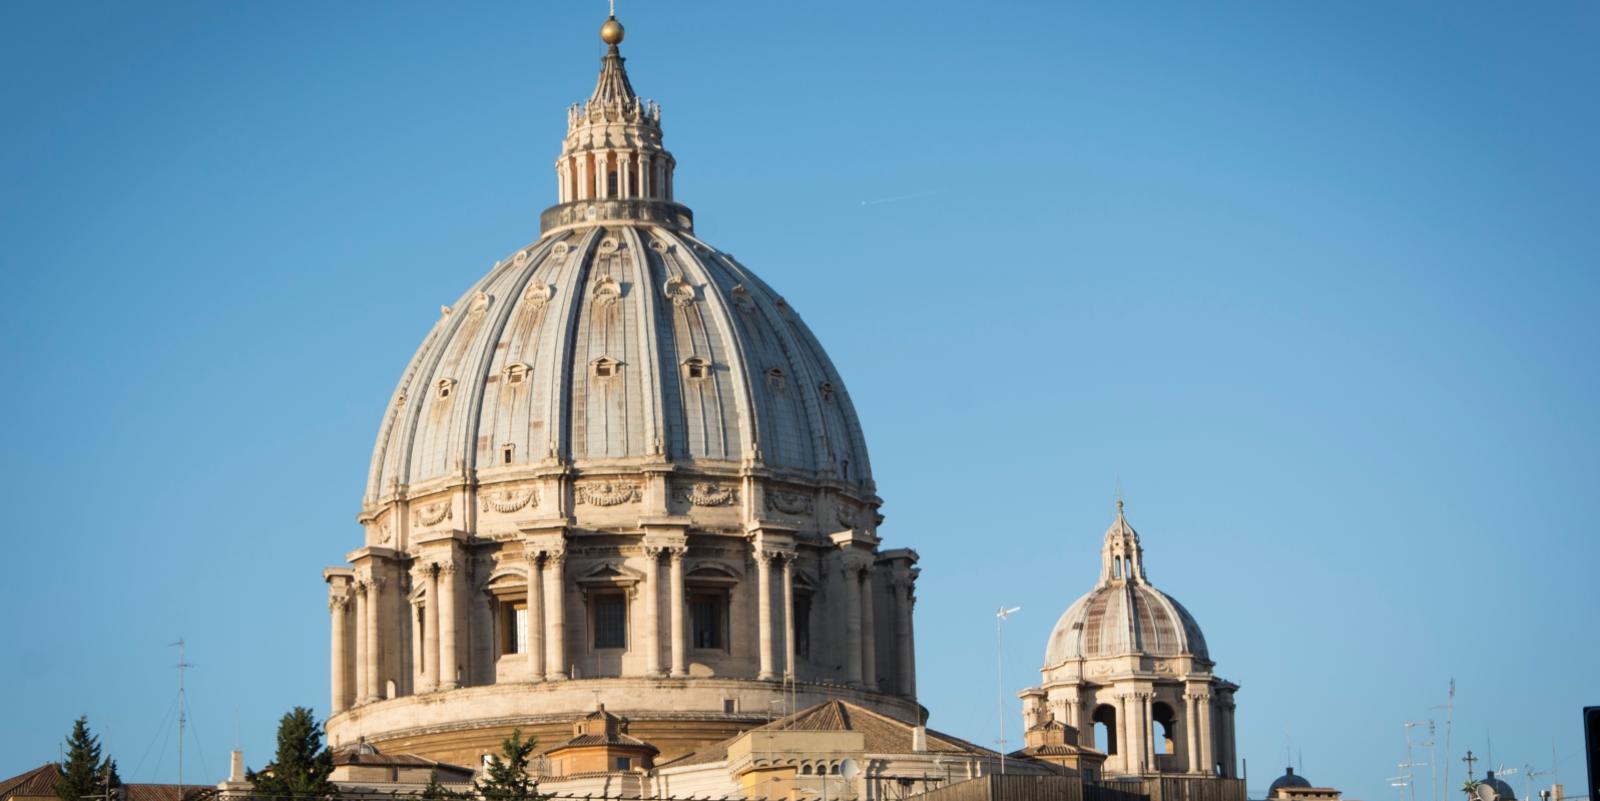 10.- 15. Oktober 2016  Pilgerfahrt nach Rom, Kuppel des Petersdomes Ex-Bild-DB-ID: 21772